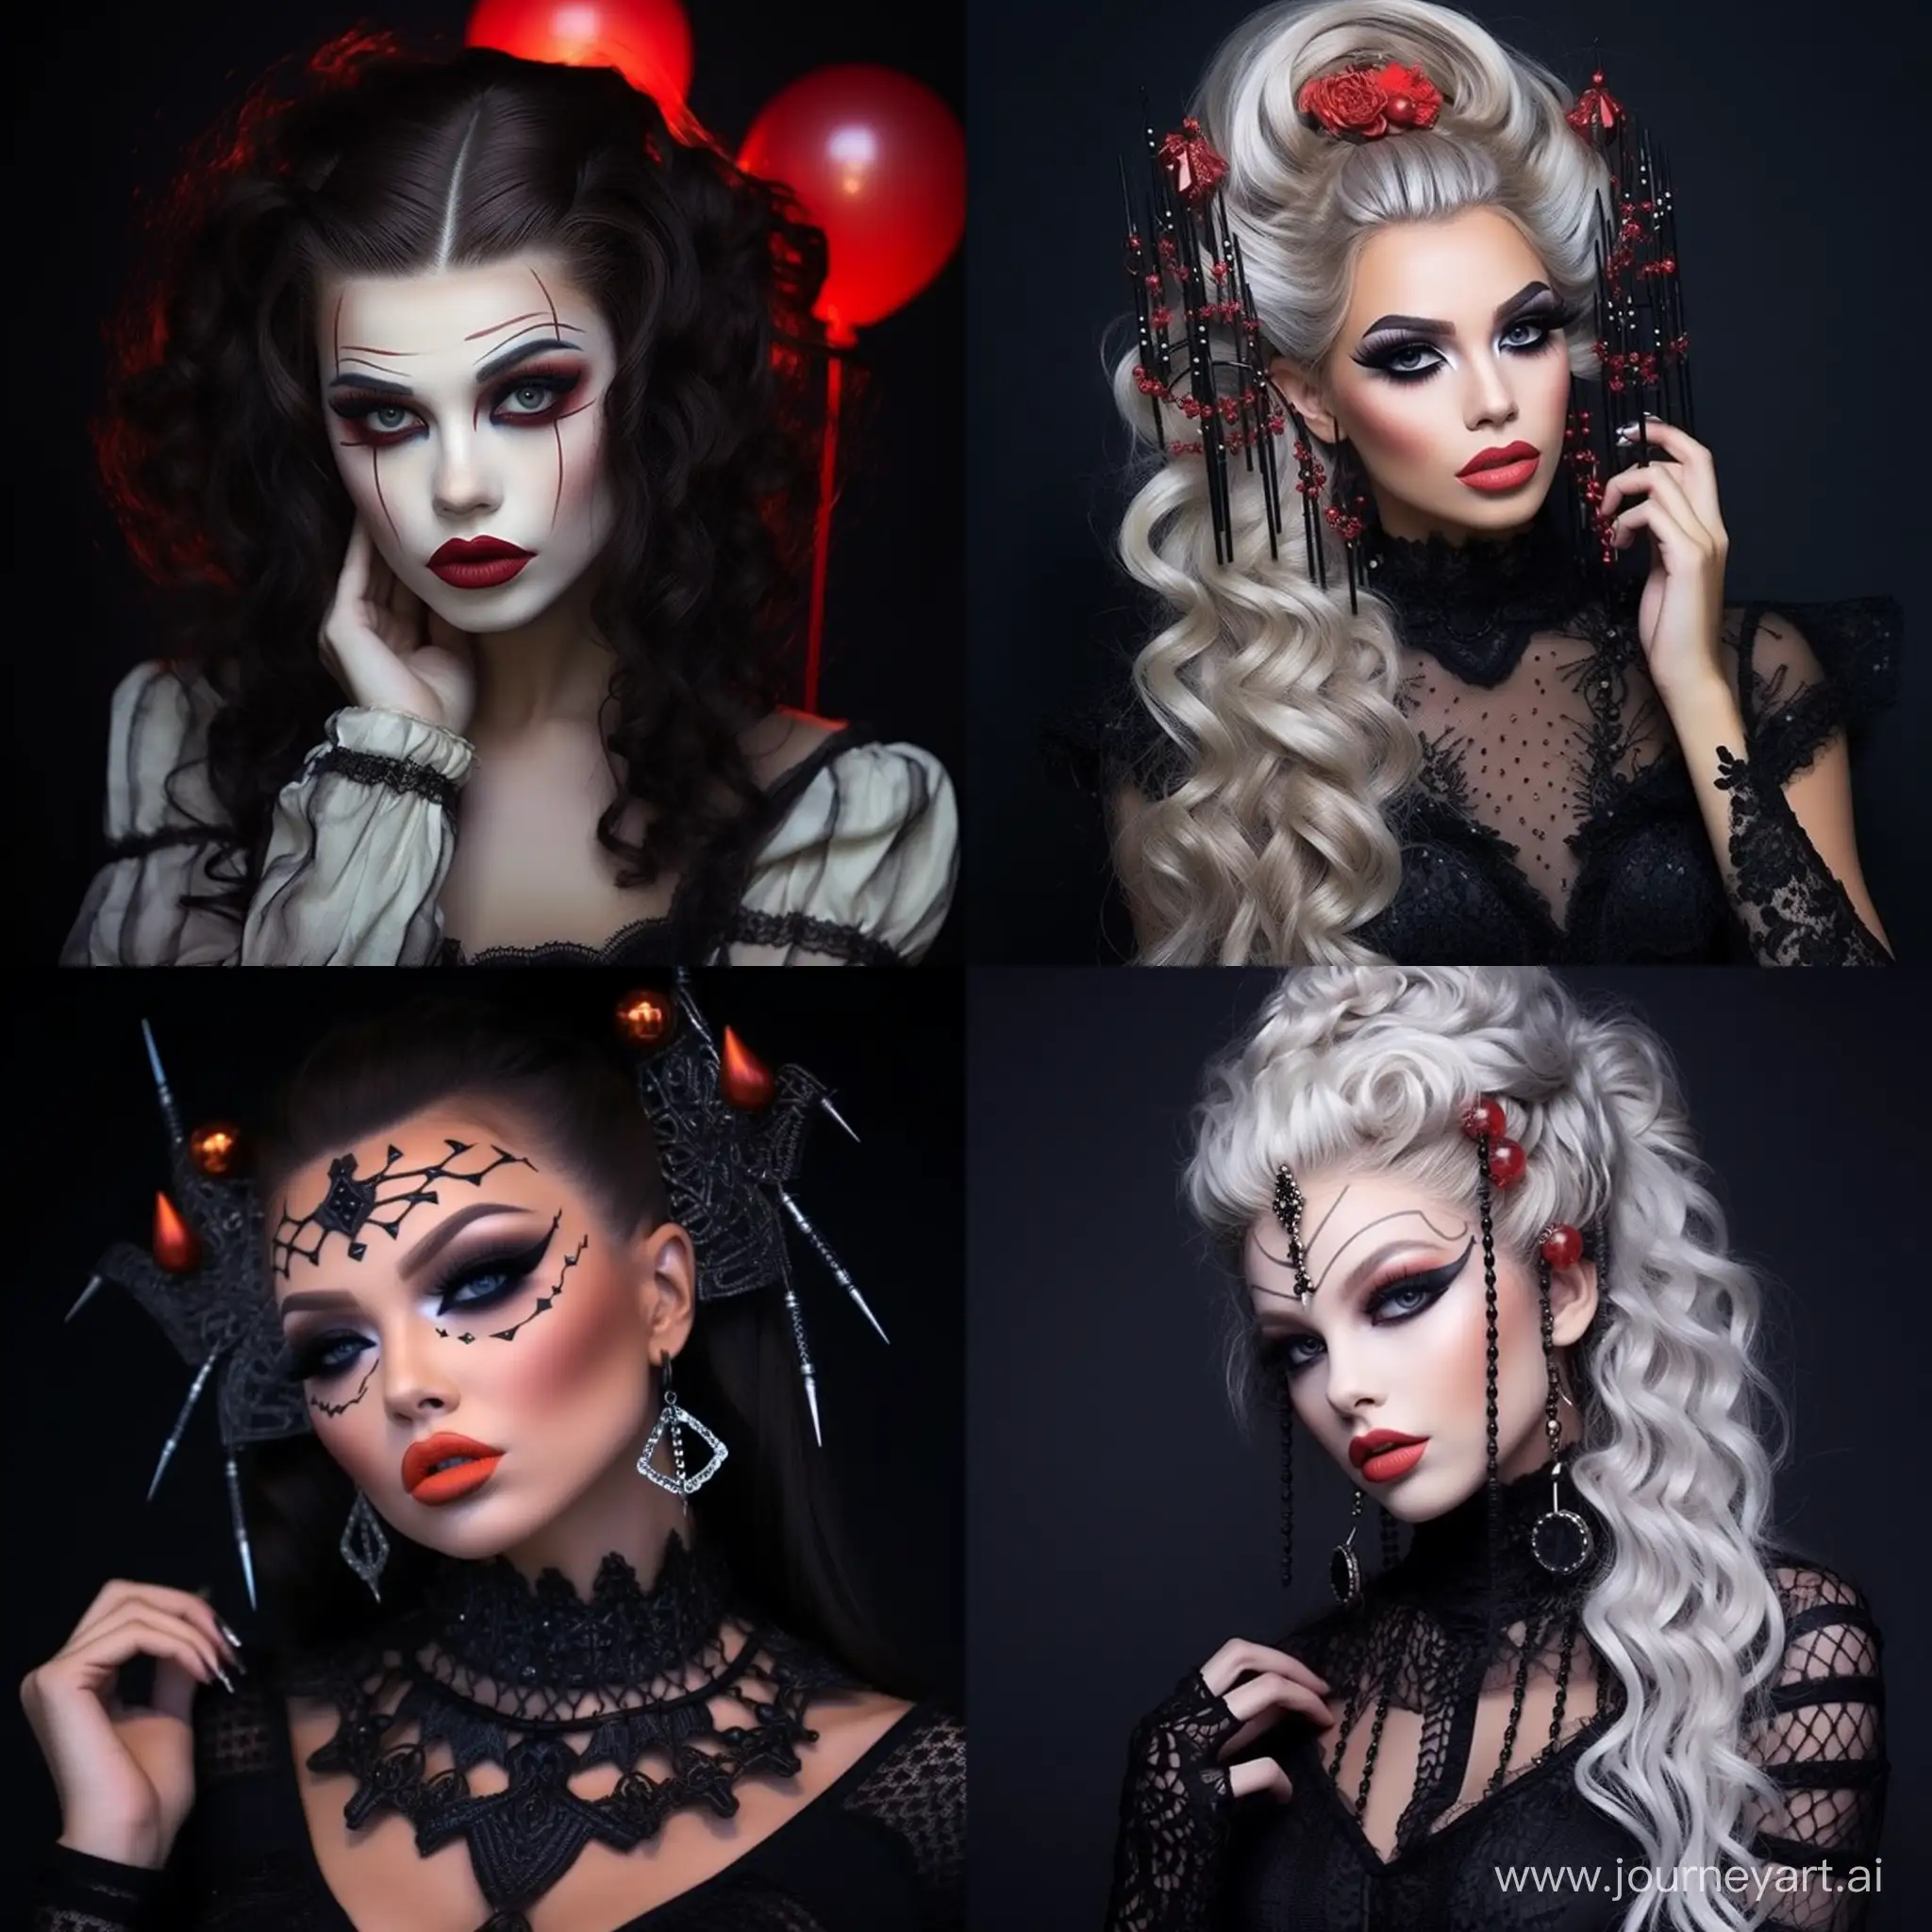 Creative-Halloween-Makeup-Ideas-for-Women